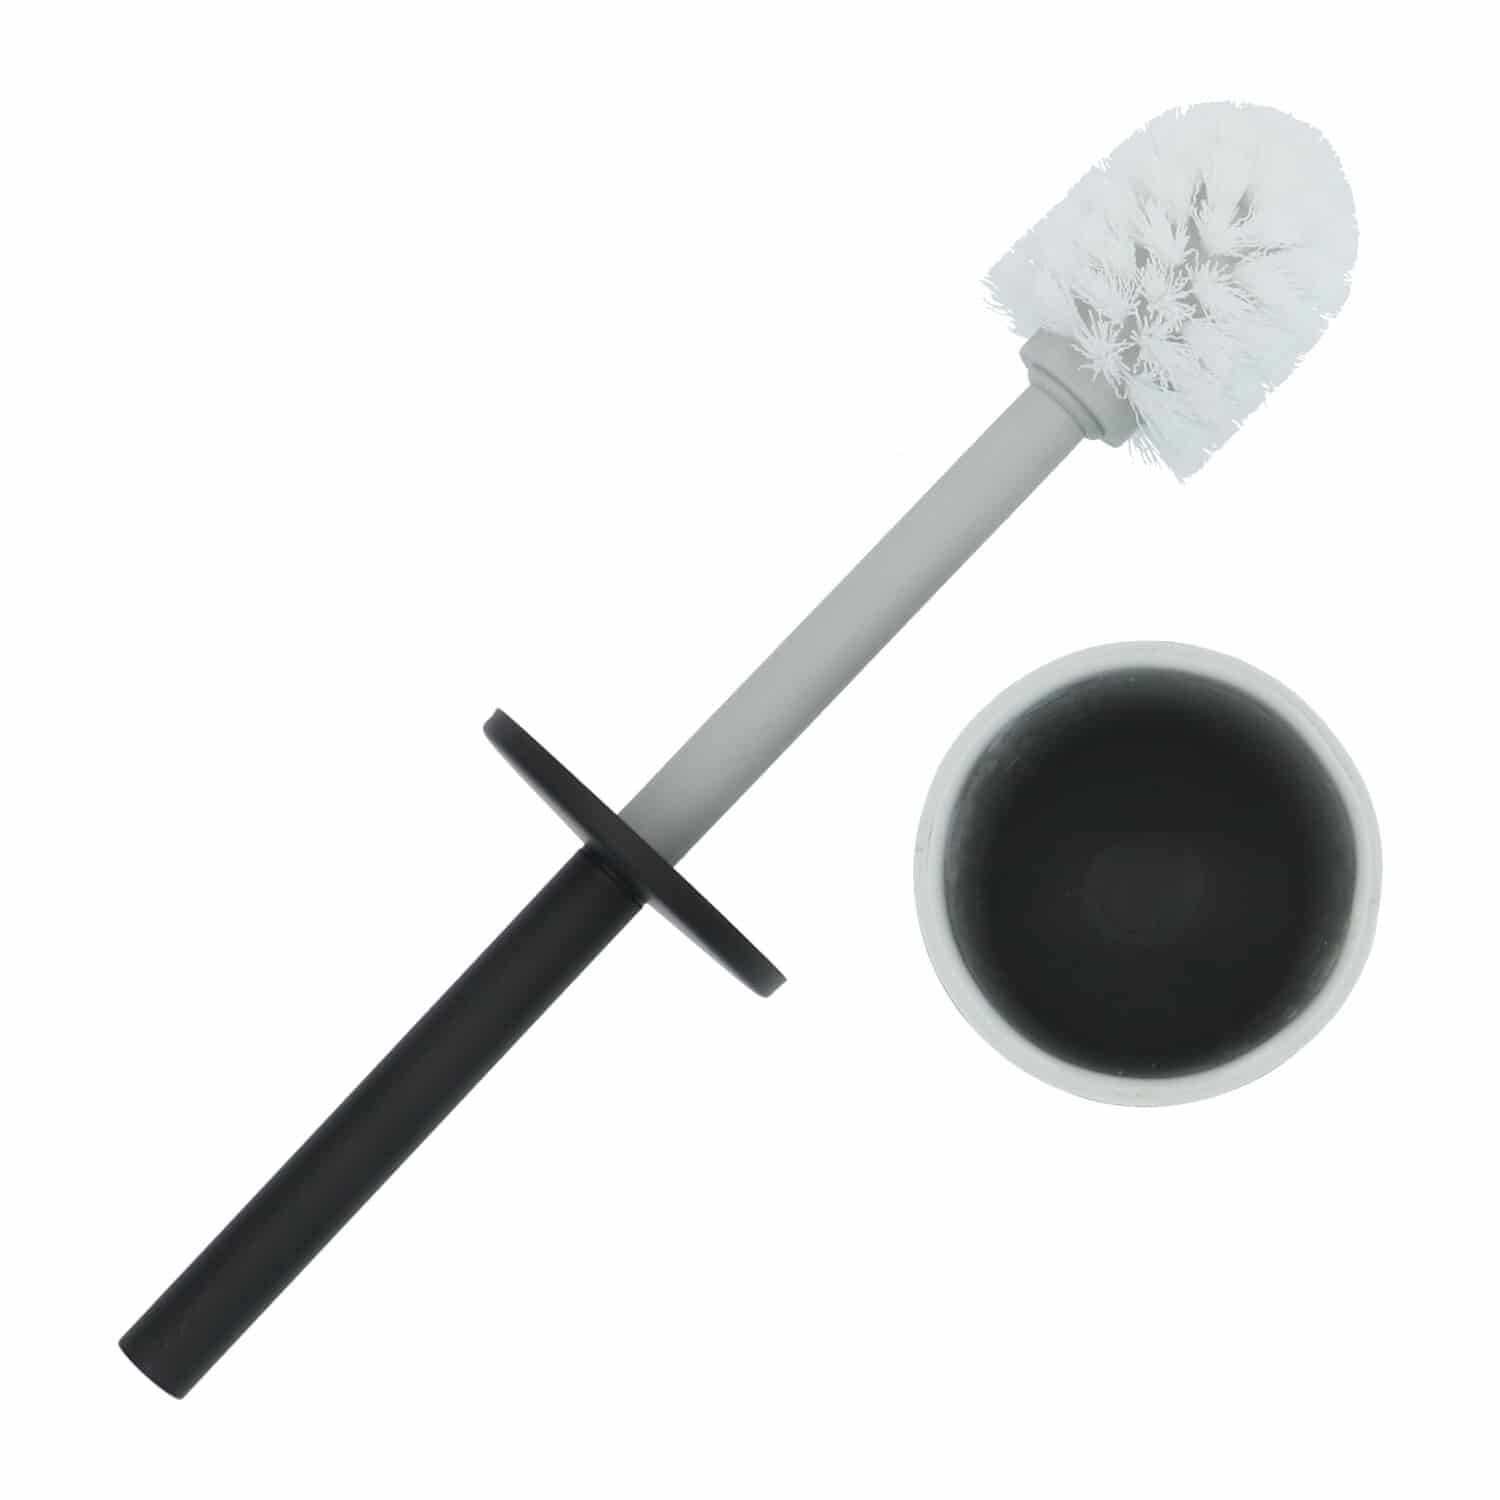 4bathroomz® Oslo Vrijstaande Toiletborstel Metaal - Zwart